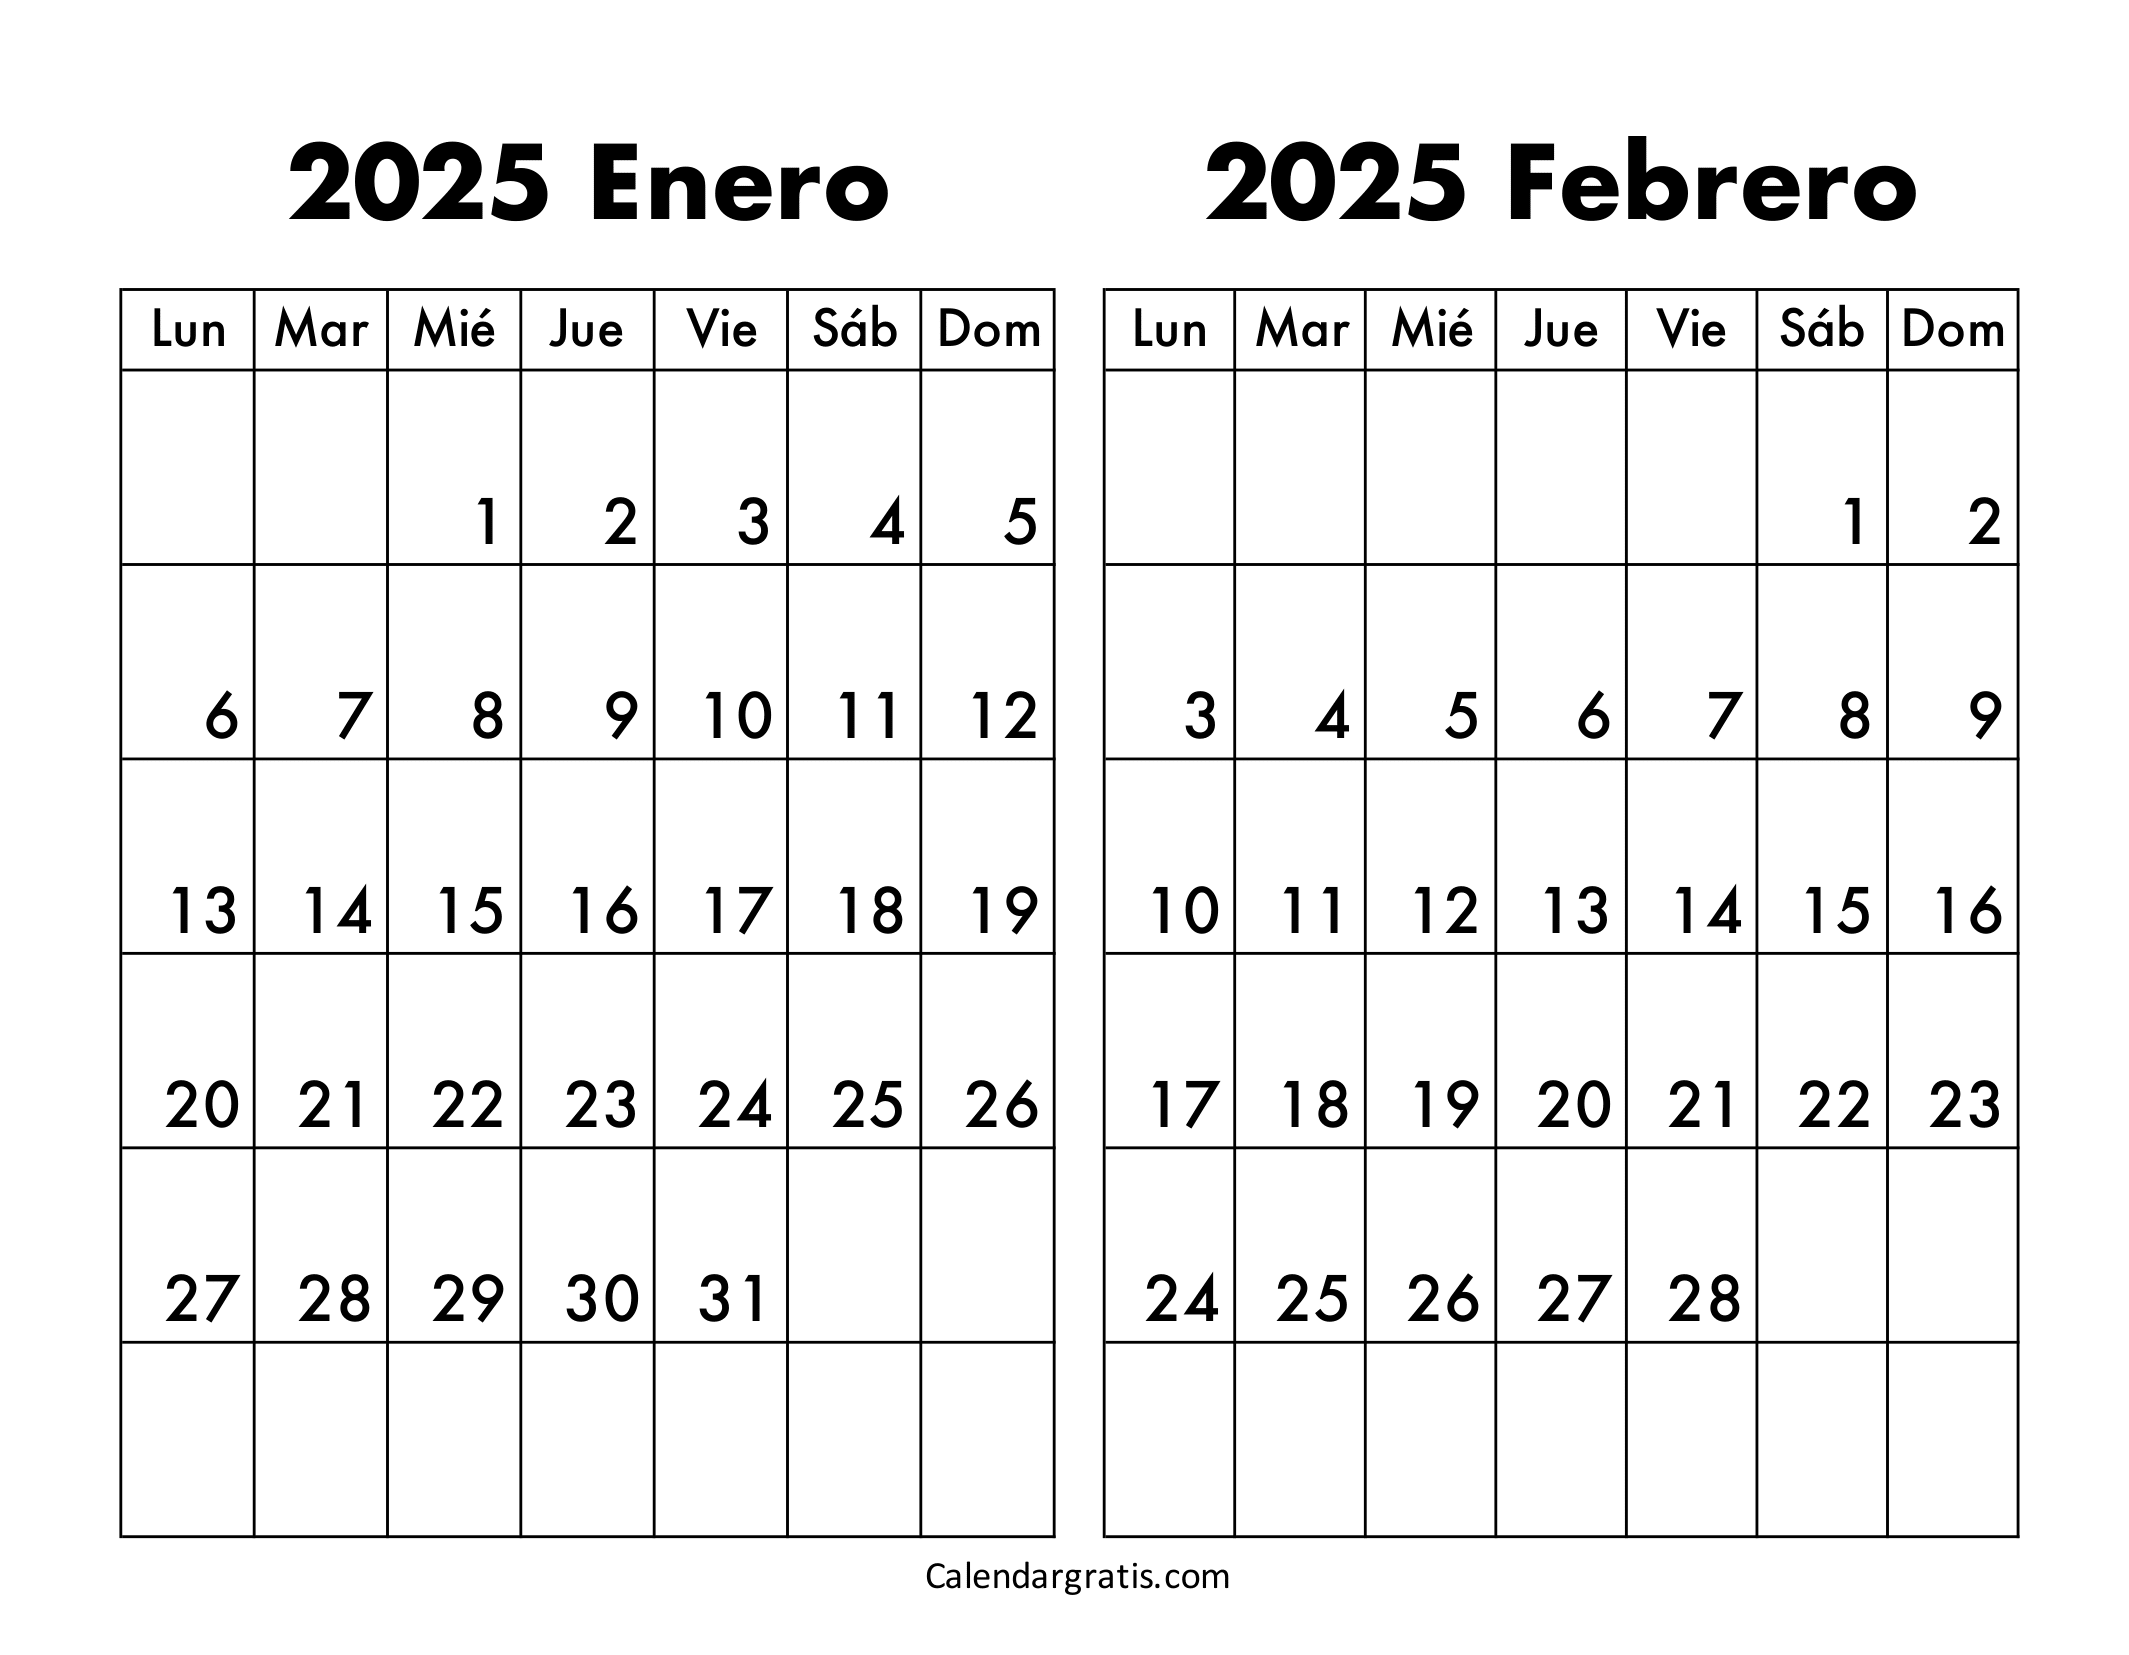 Calendario enero y febrero 2025 para imprimir gratis